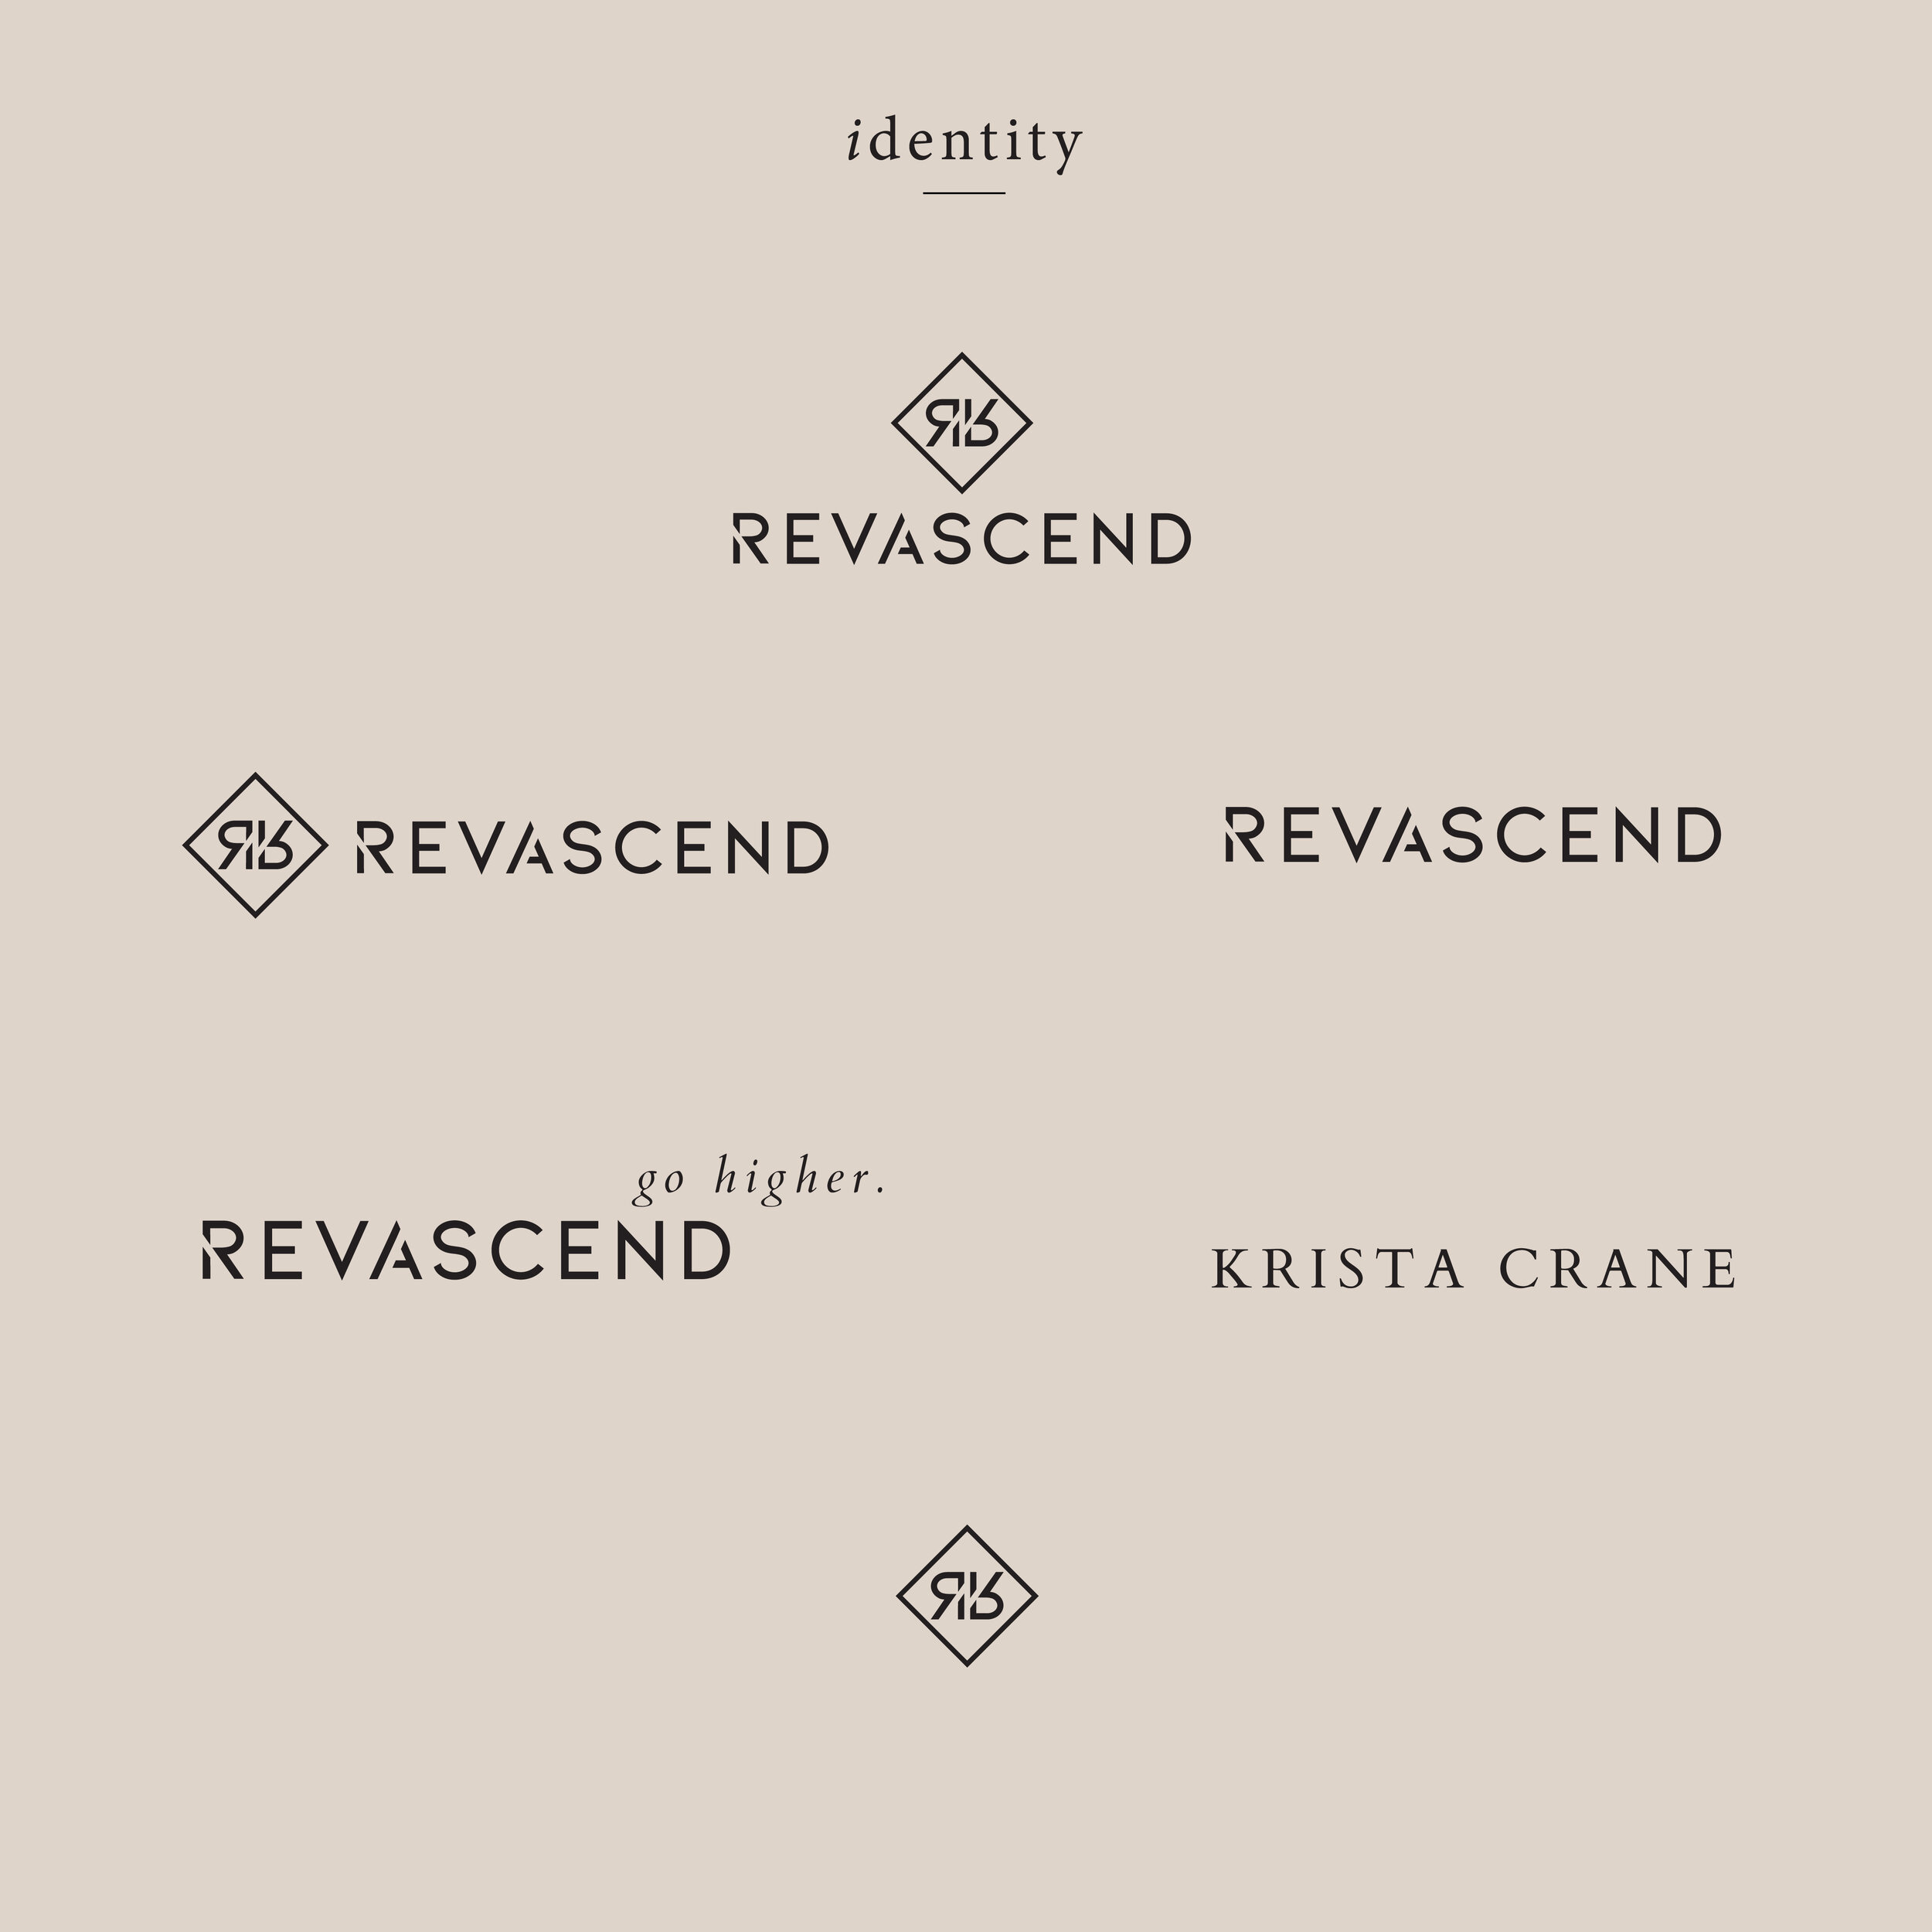 revascend-identity-23.jpg